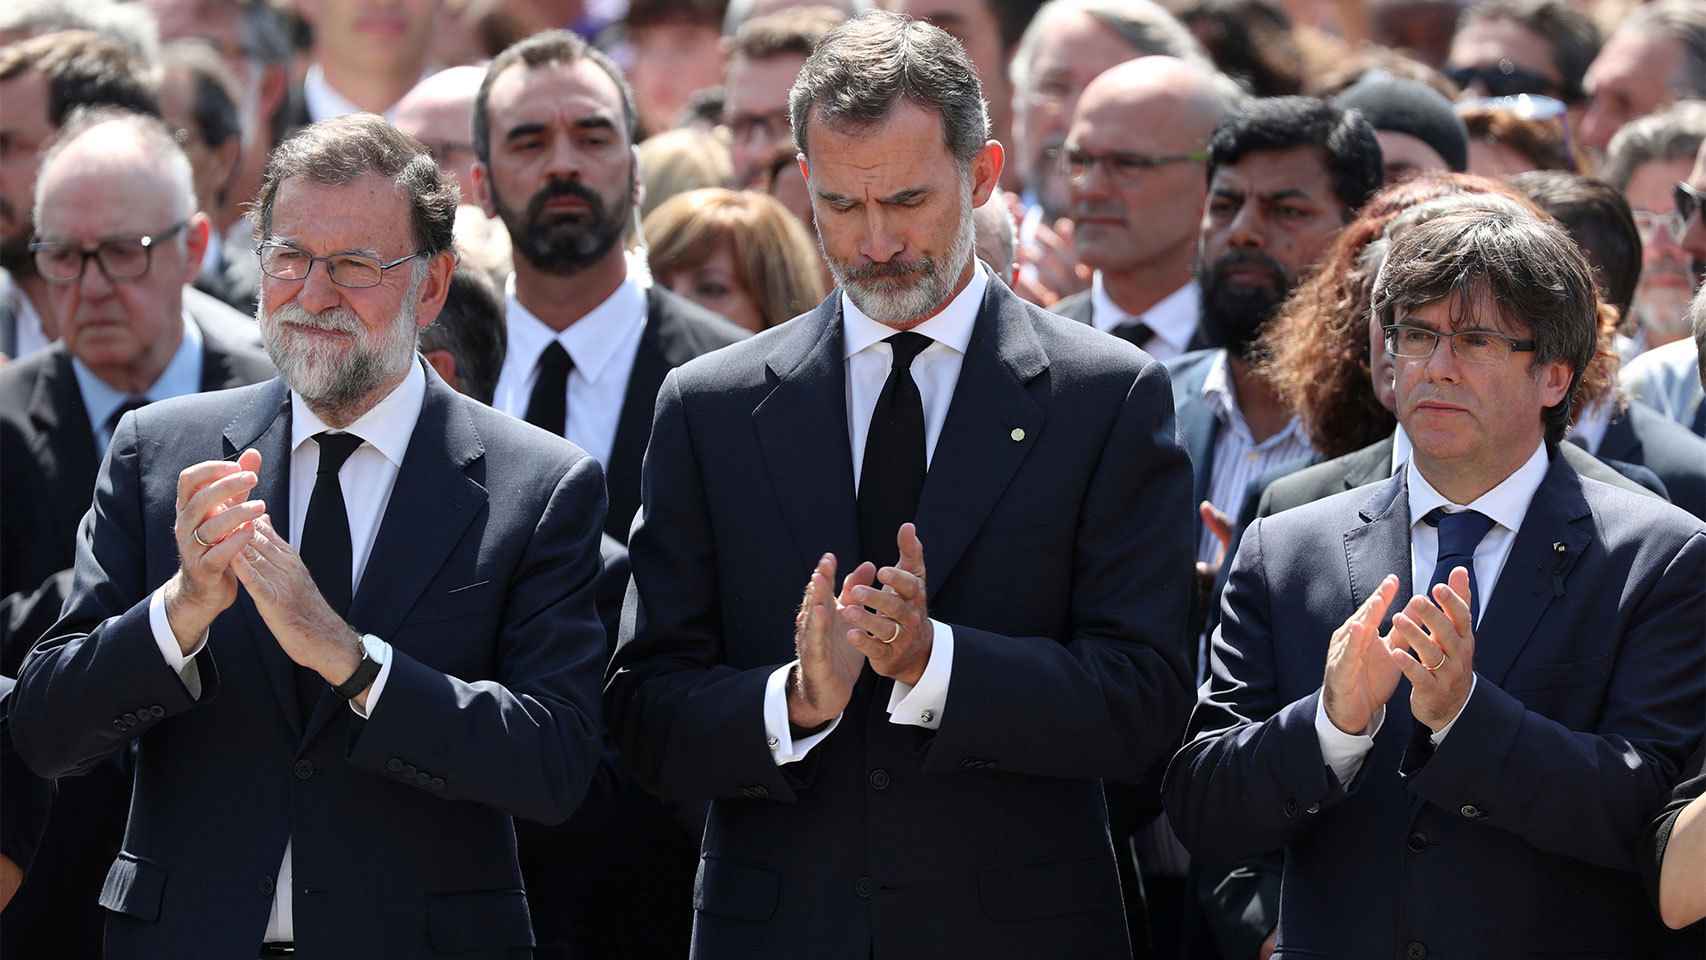 El minuto de silencio fue presidido por el Rey, acompañado de Rajoy y Puigdemont./ Sergio Perez (Reuters)